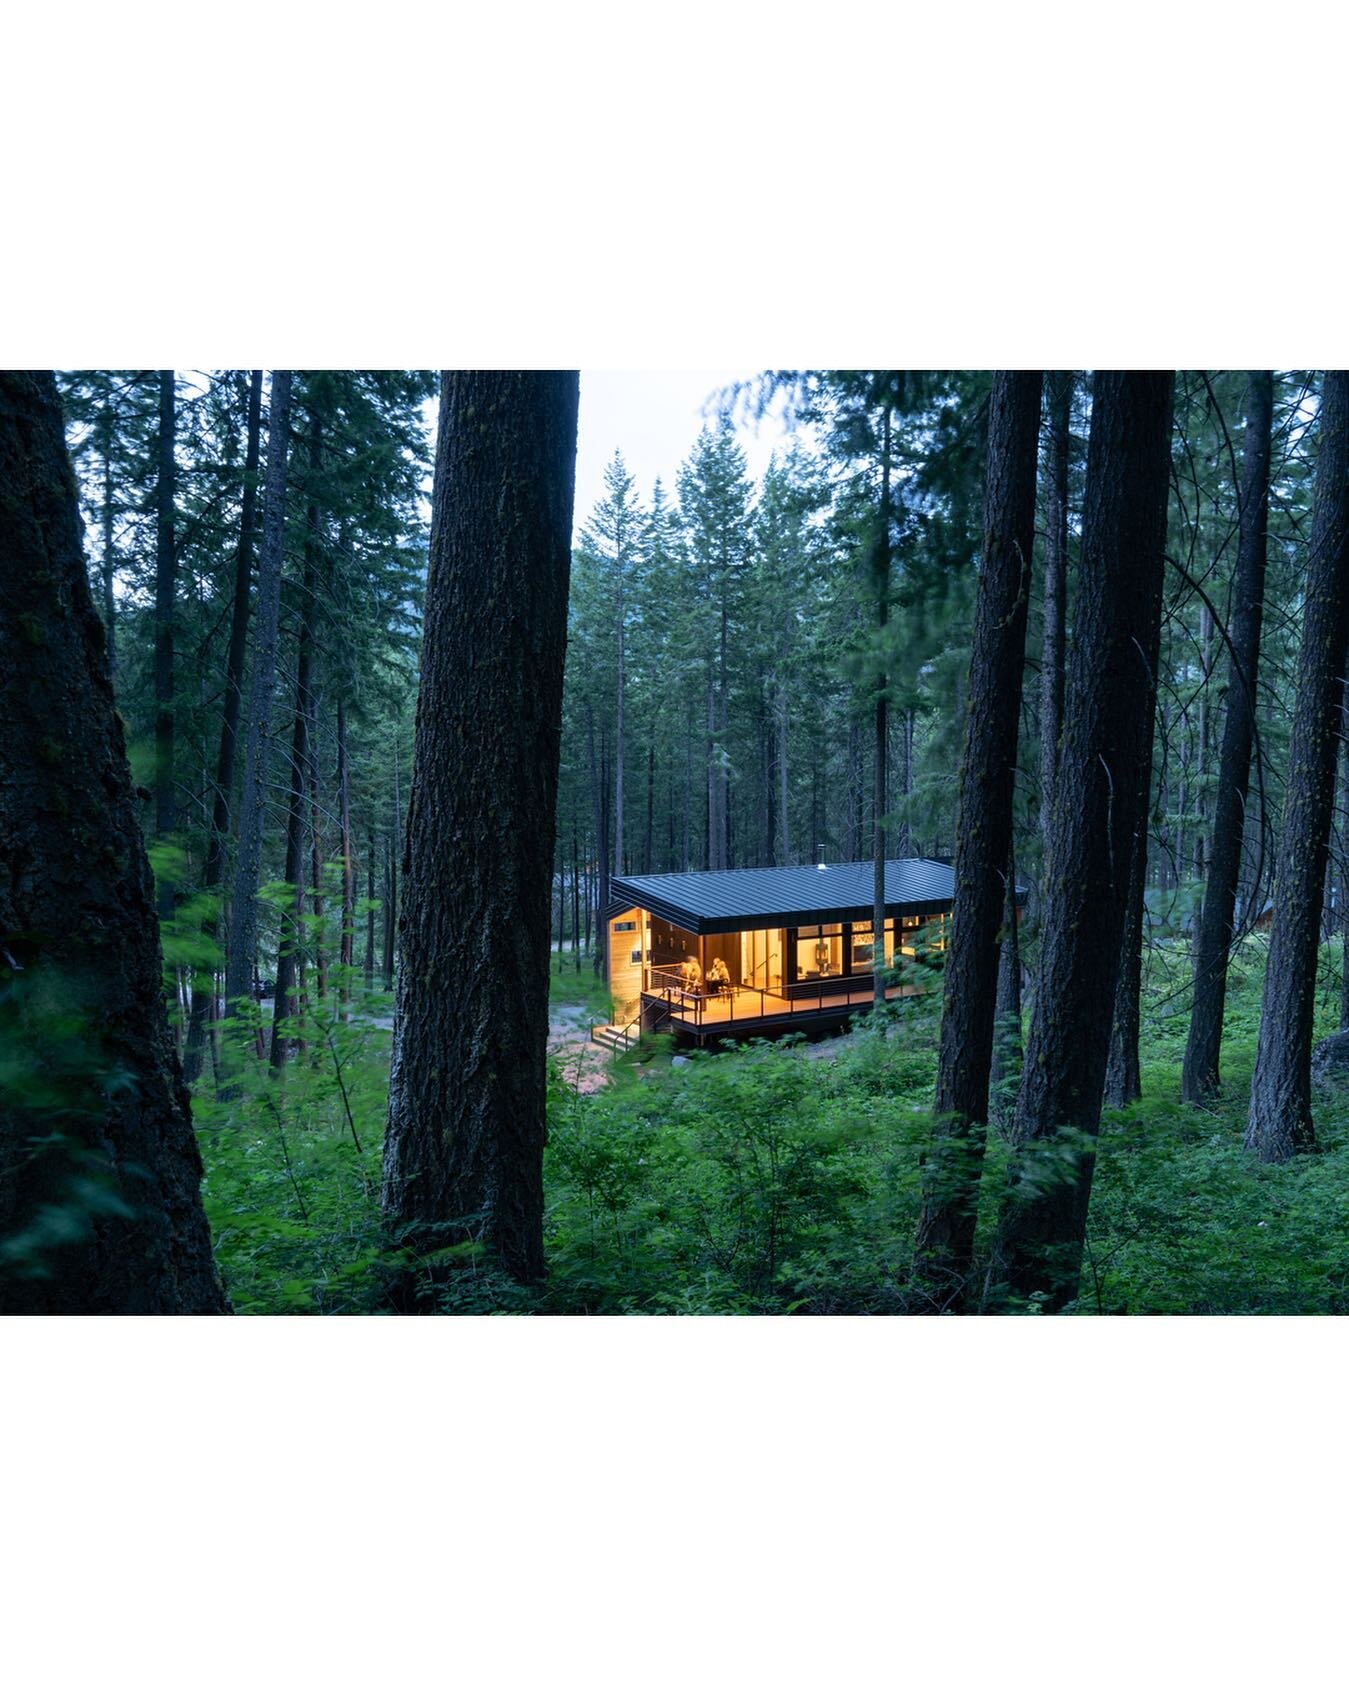 Mazama Cabin, 2021 for @urbanadd_architects
.
#mazama #methow #forest #cabin #home